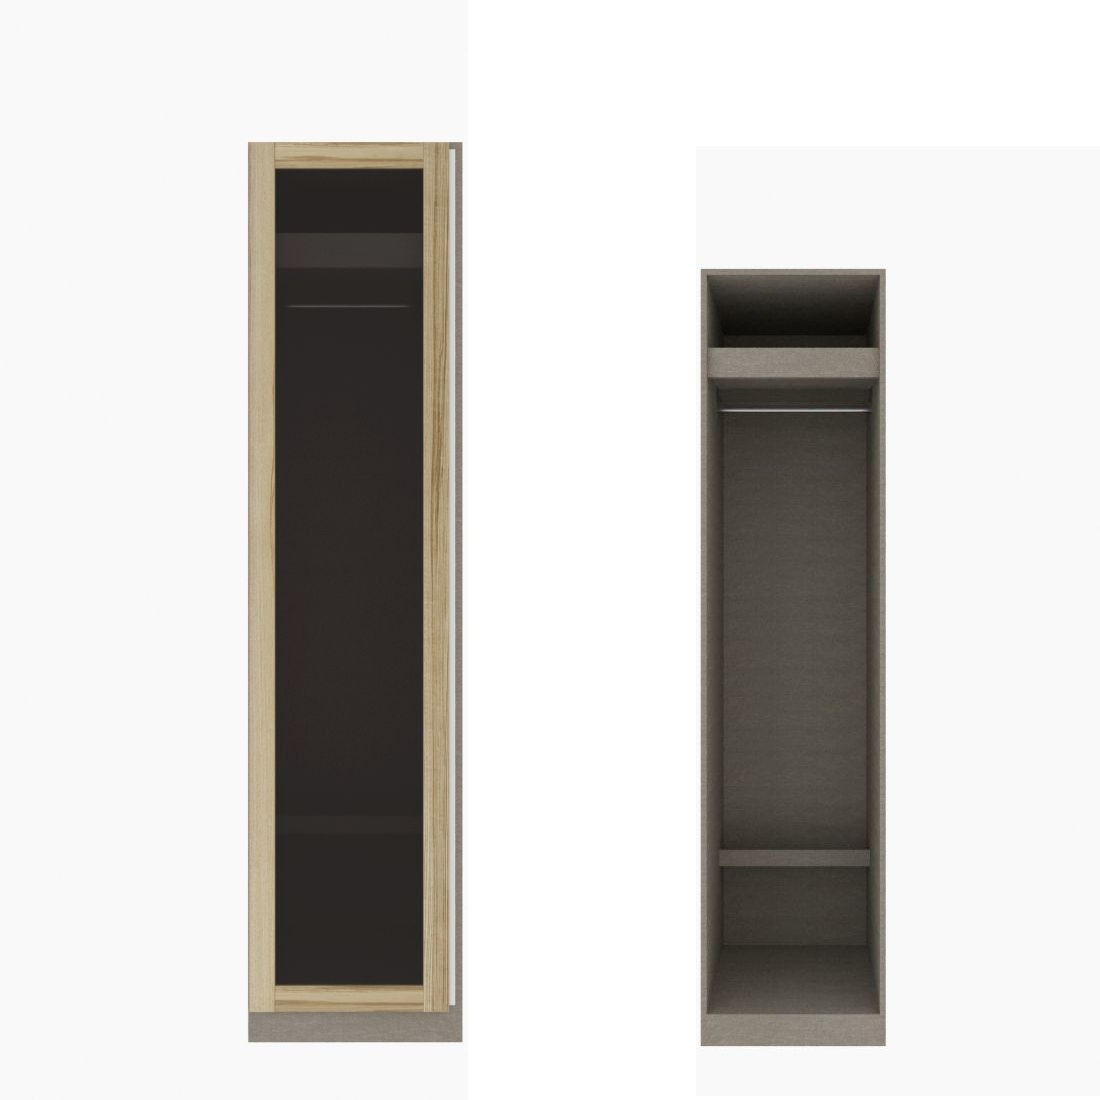 ตู้เสื้อผ้า ราวแขวนโล่ง OP-J (หน้าบานเปิดซ้าย) ขนาด 50 ซม. รุ่น Blox สีไม้อ่อน&กระจกชาดำ01